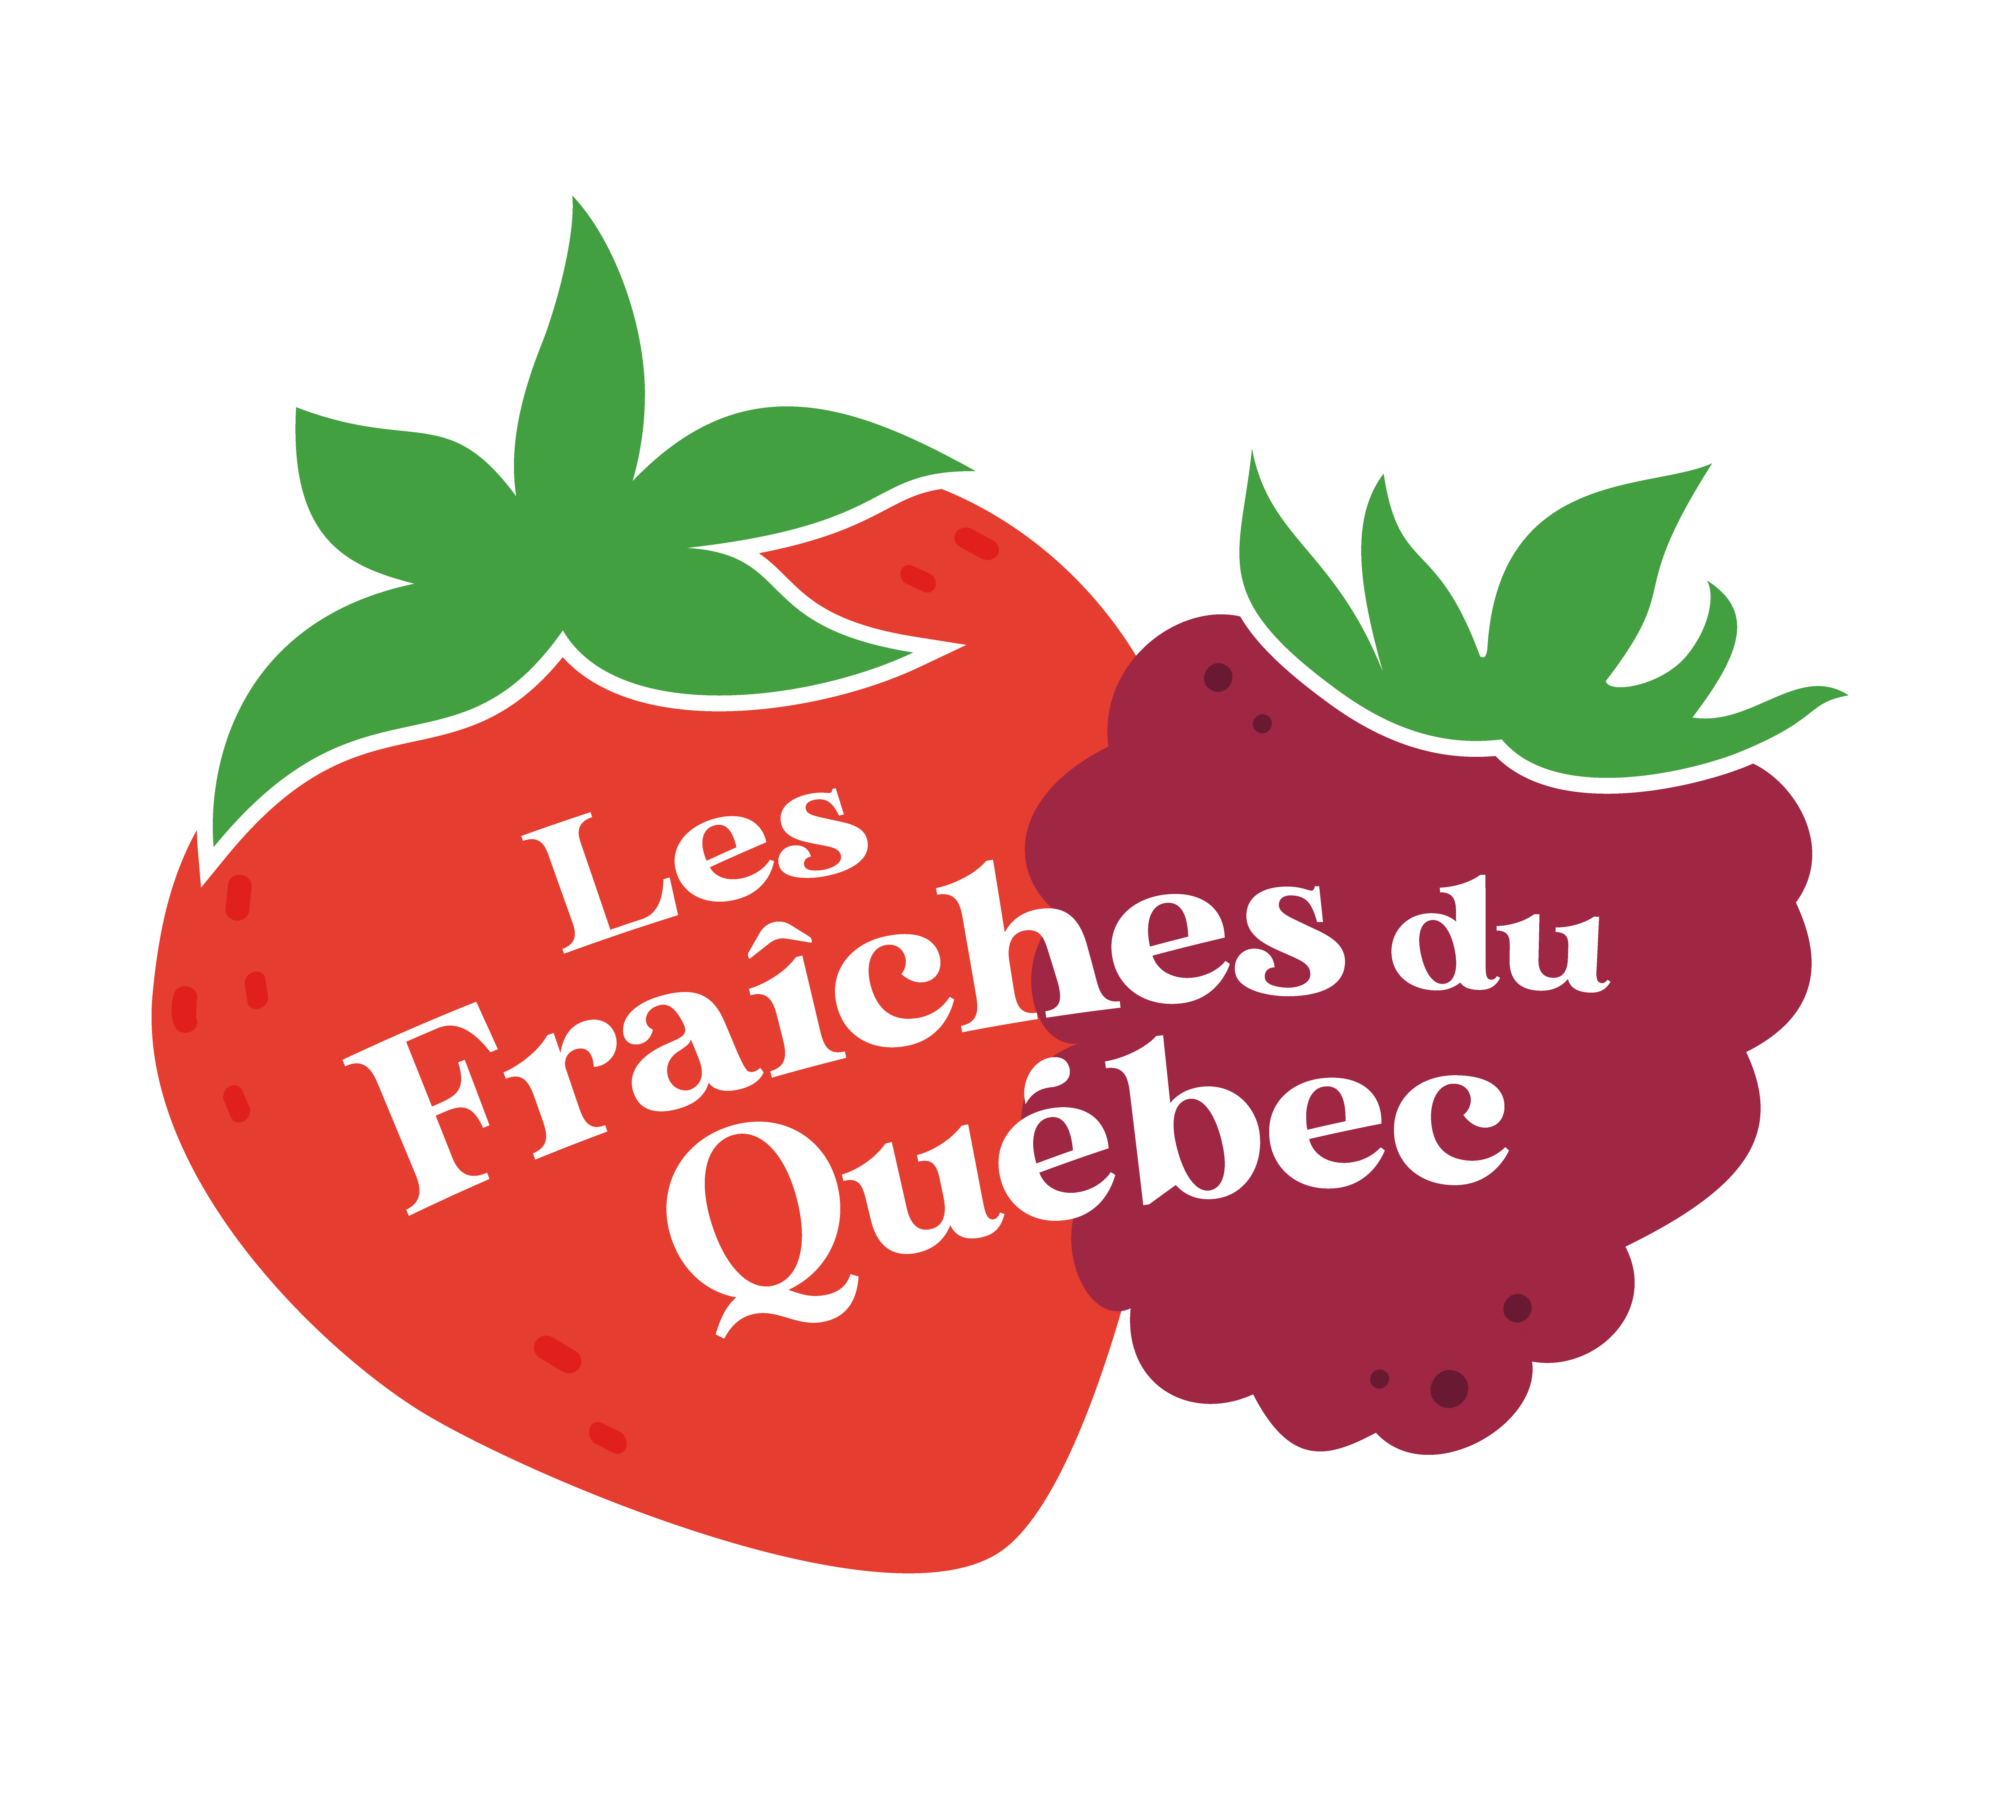 Association des producteurs de fraises et de framboises du Québec